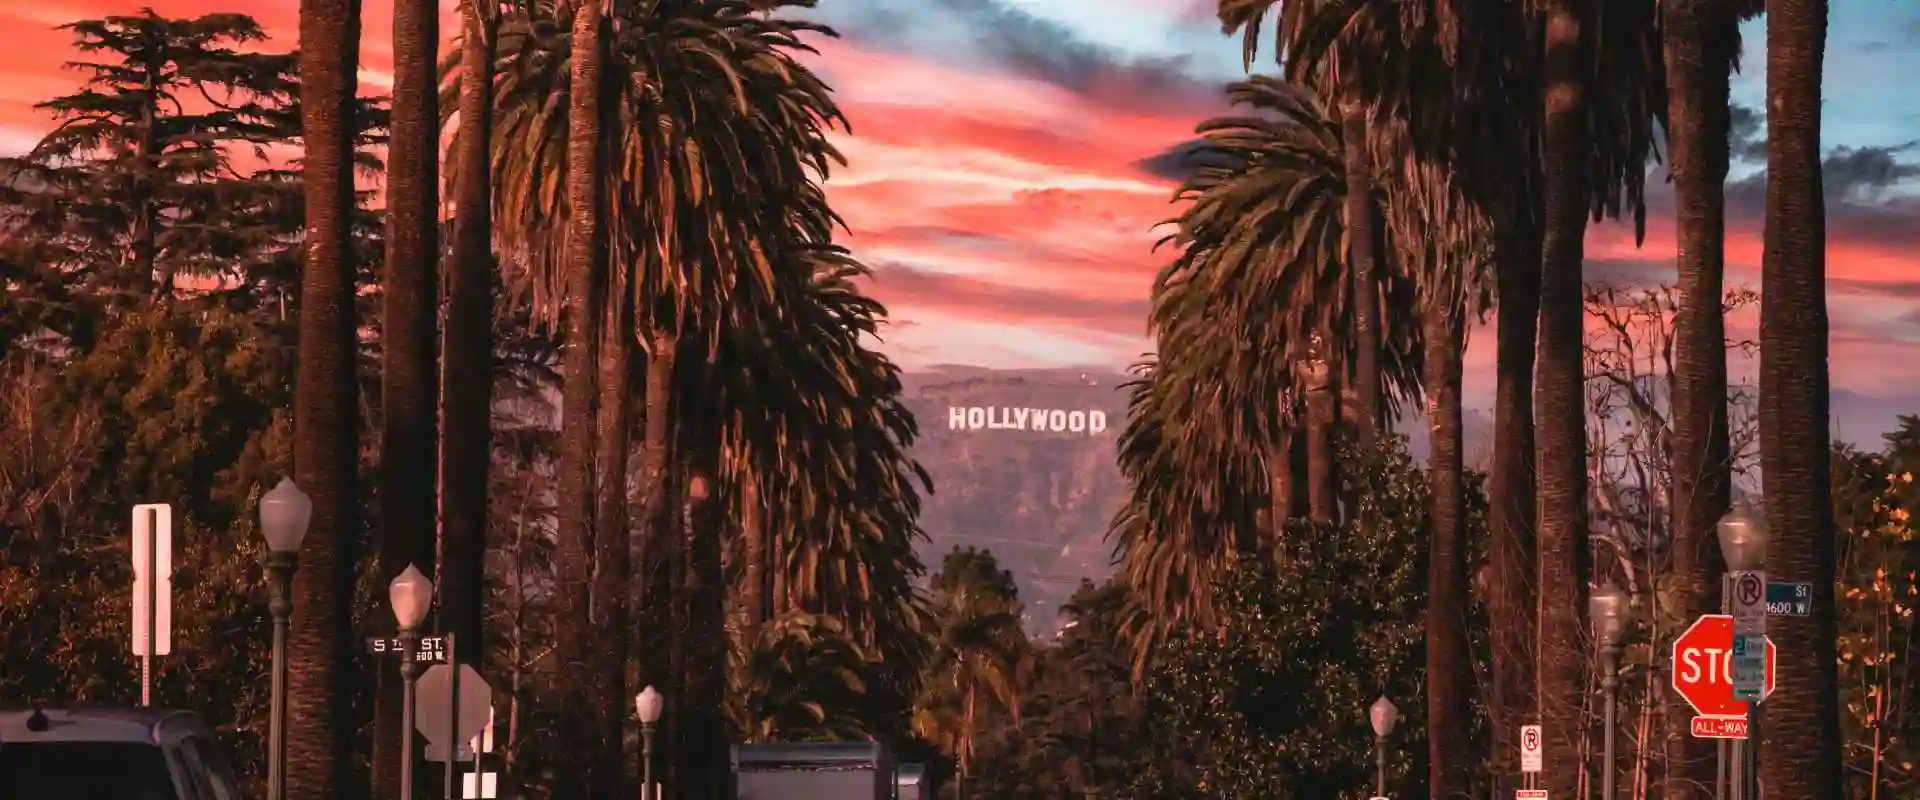 Hollywood I Aftensol Bannerbillede